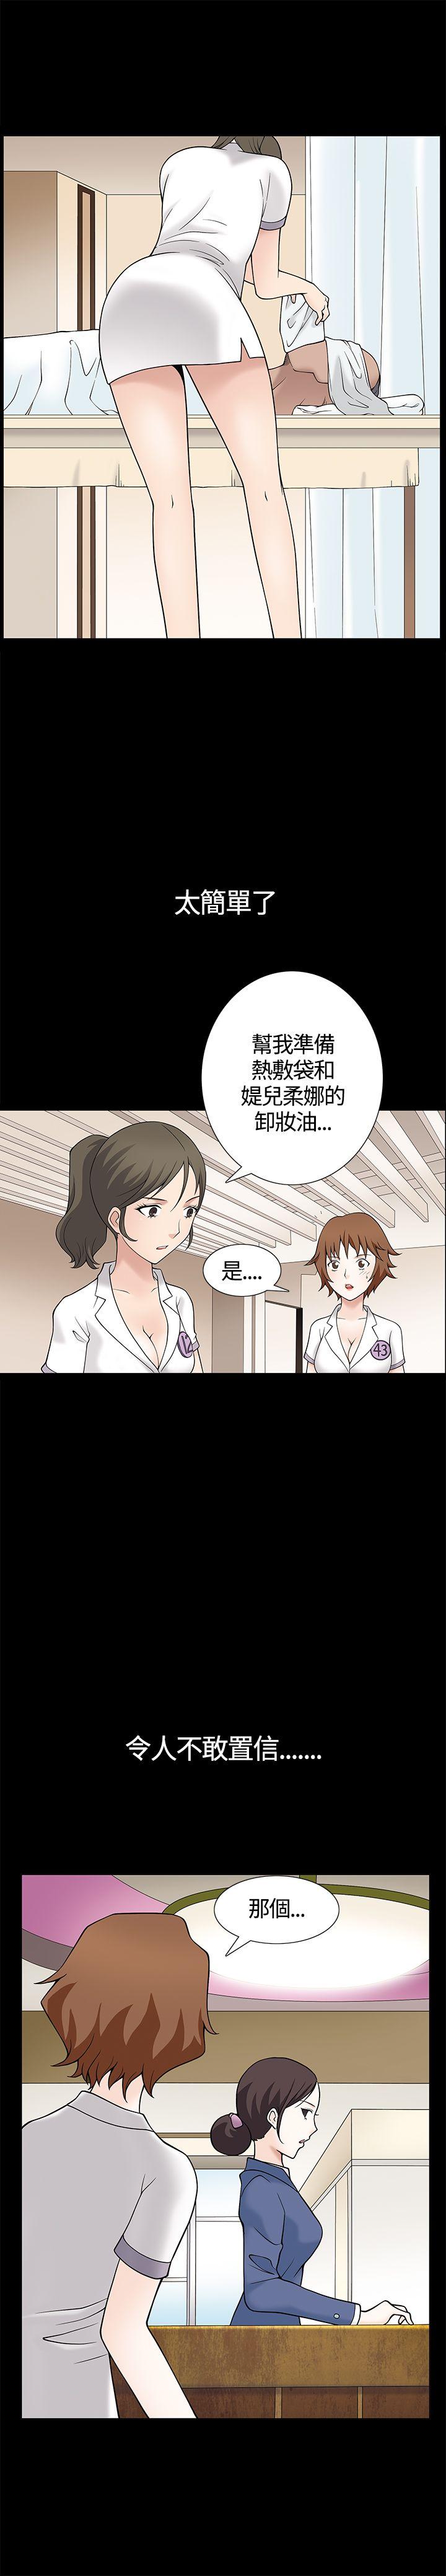 韩国污漫画 人妻性解放3:粗糙的手 第8话 23